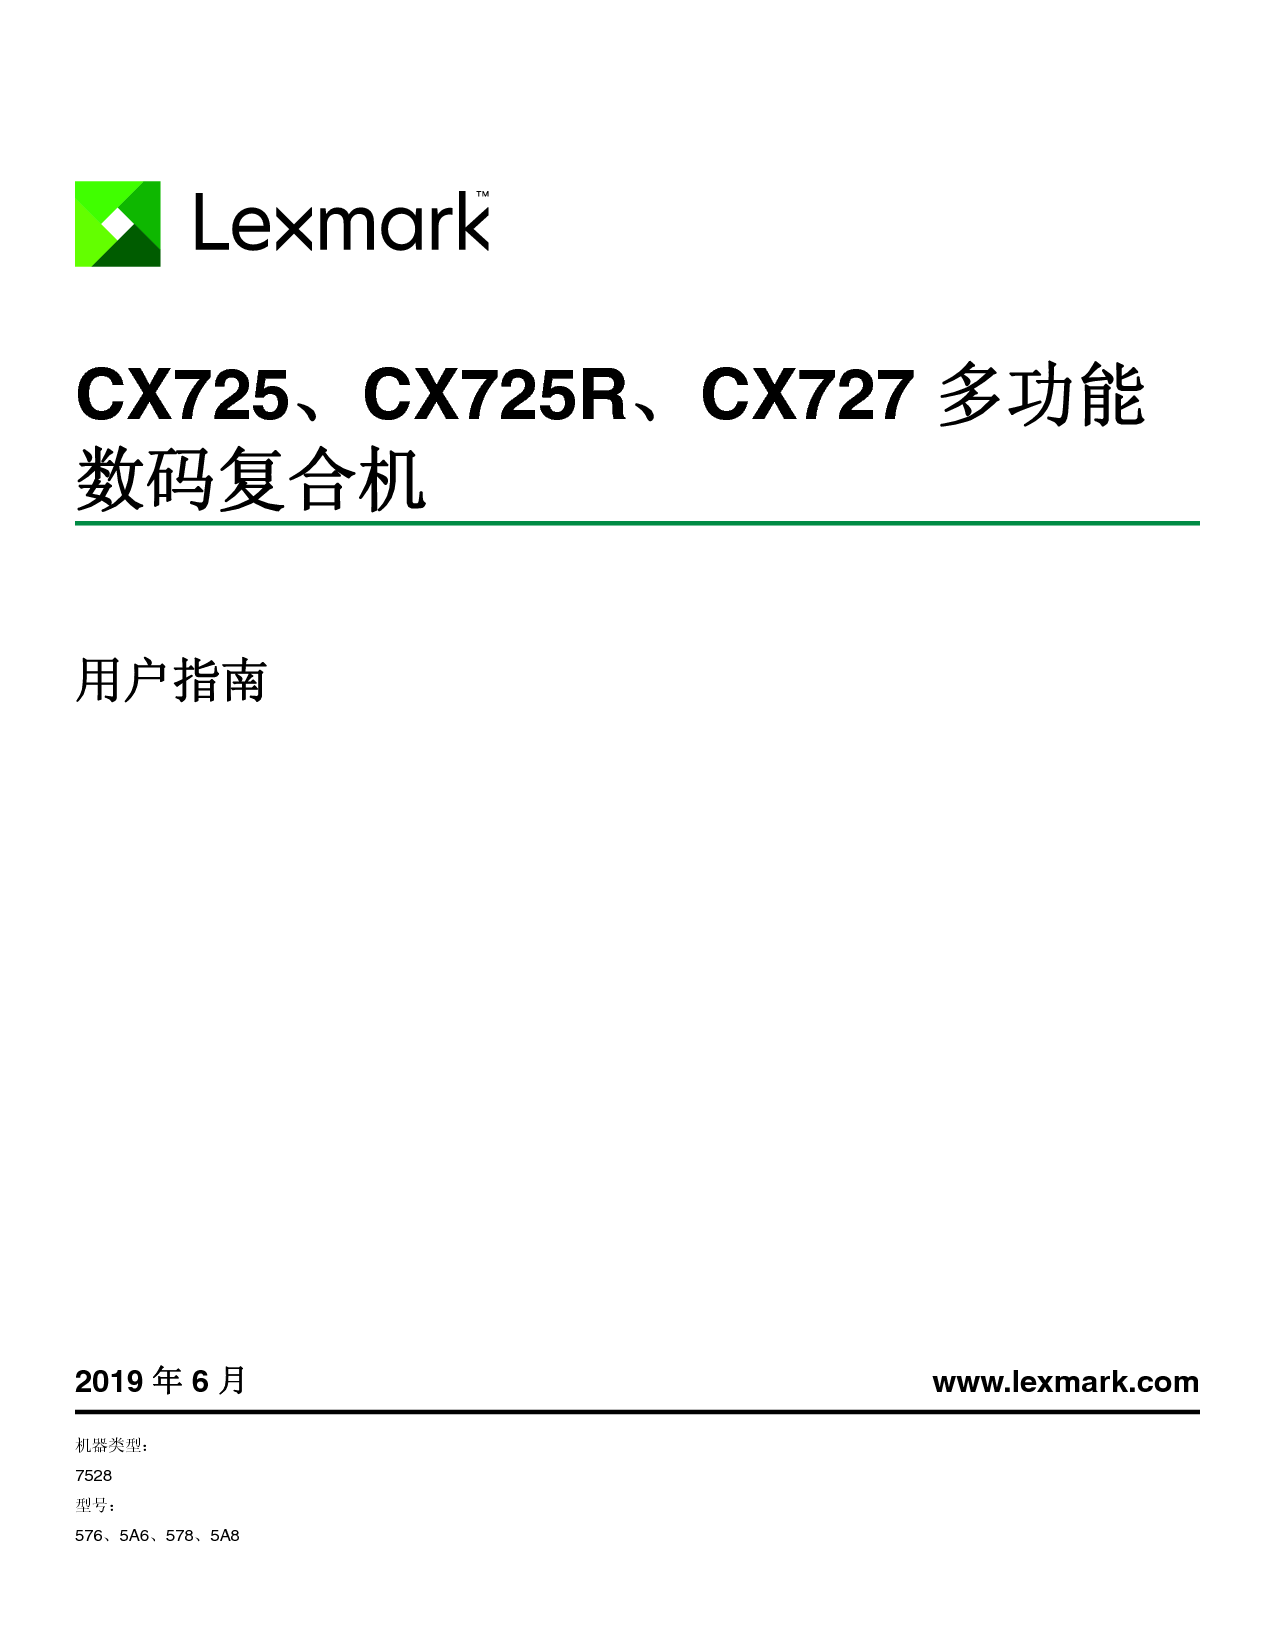 利盟 Lexmark CX725 用户指南 封面